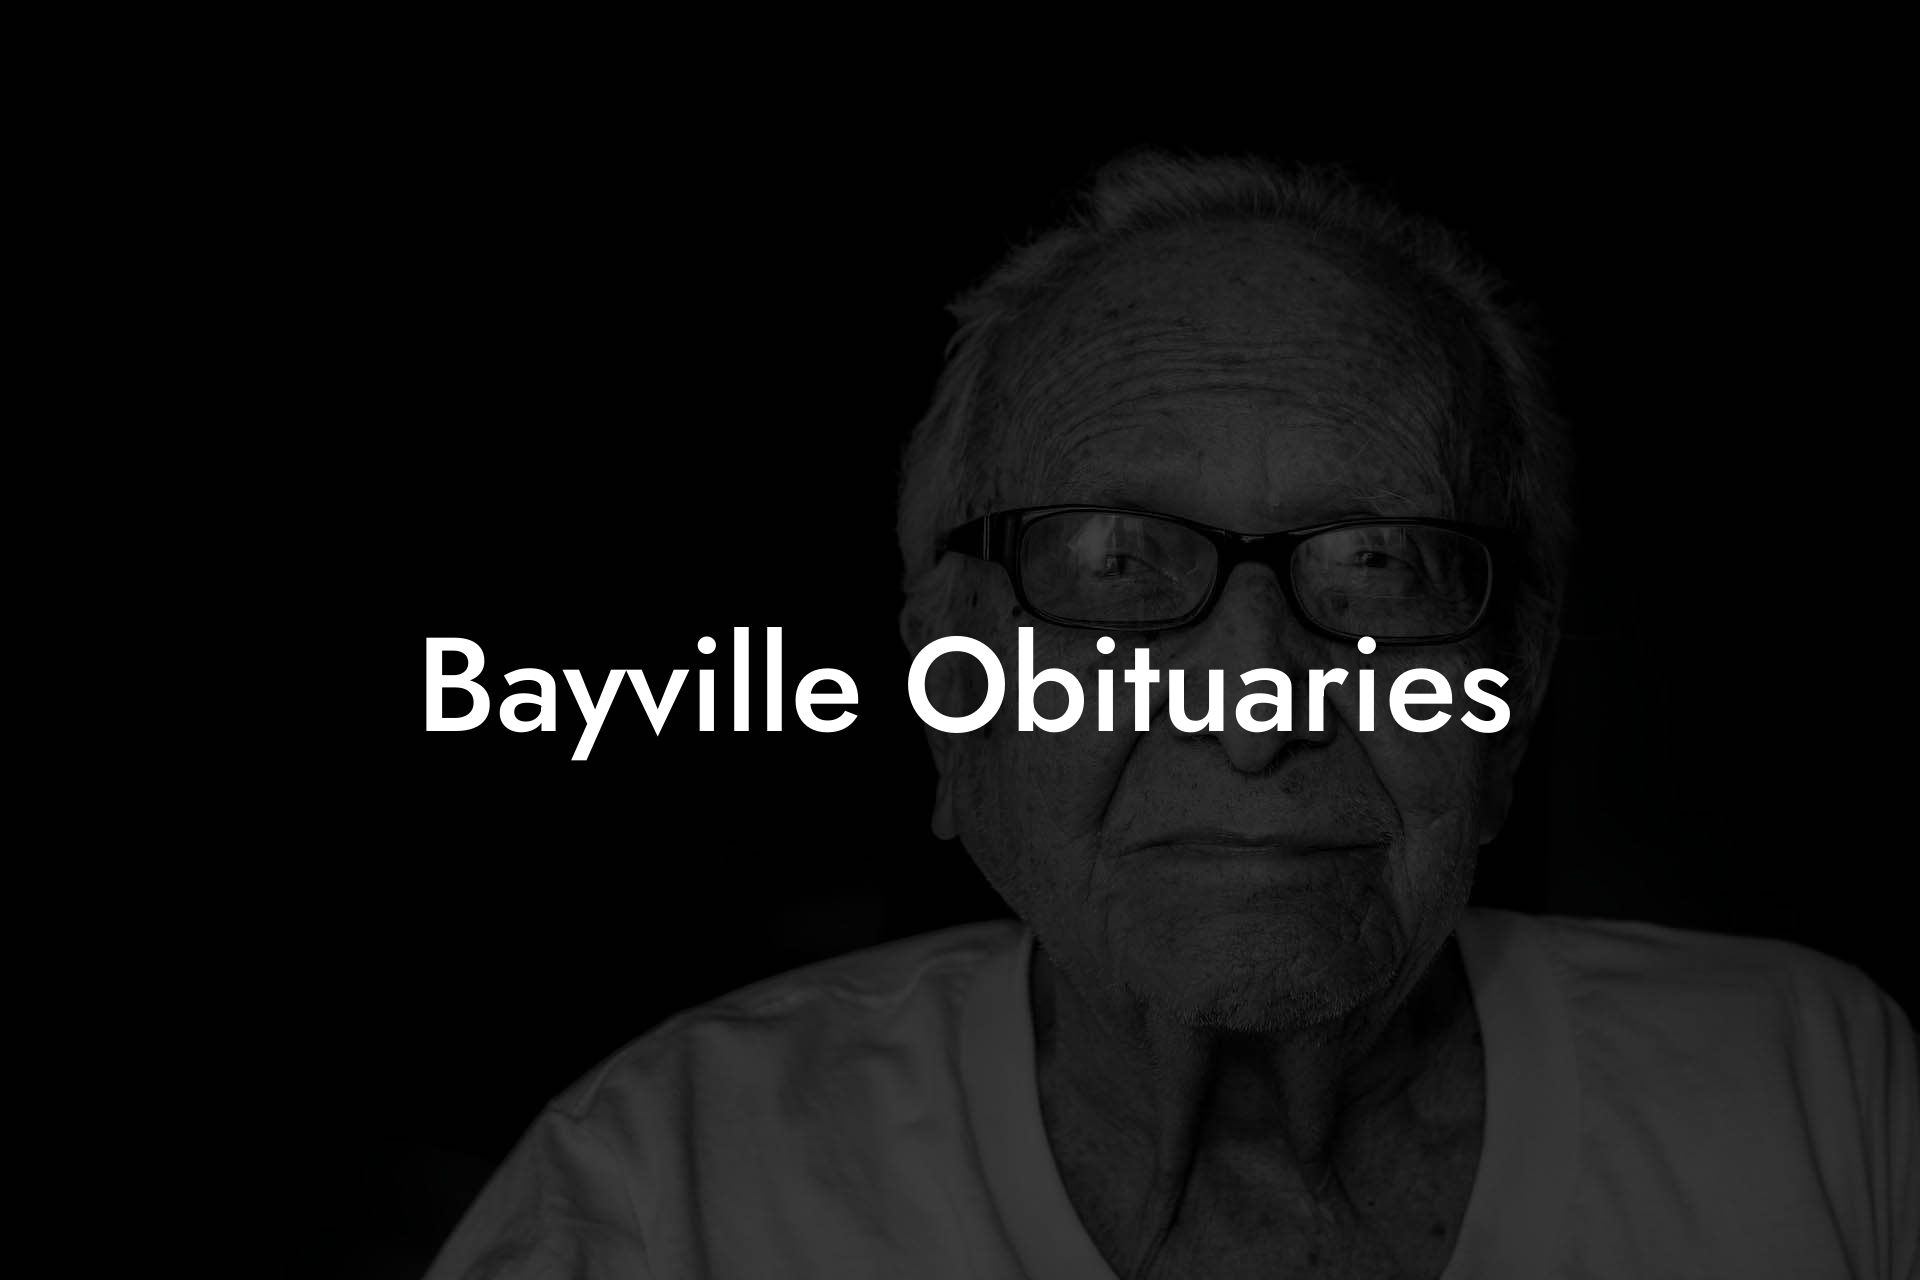 Bayville Obituaries